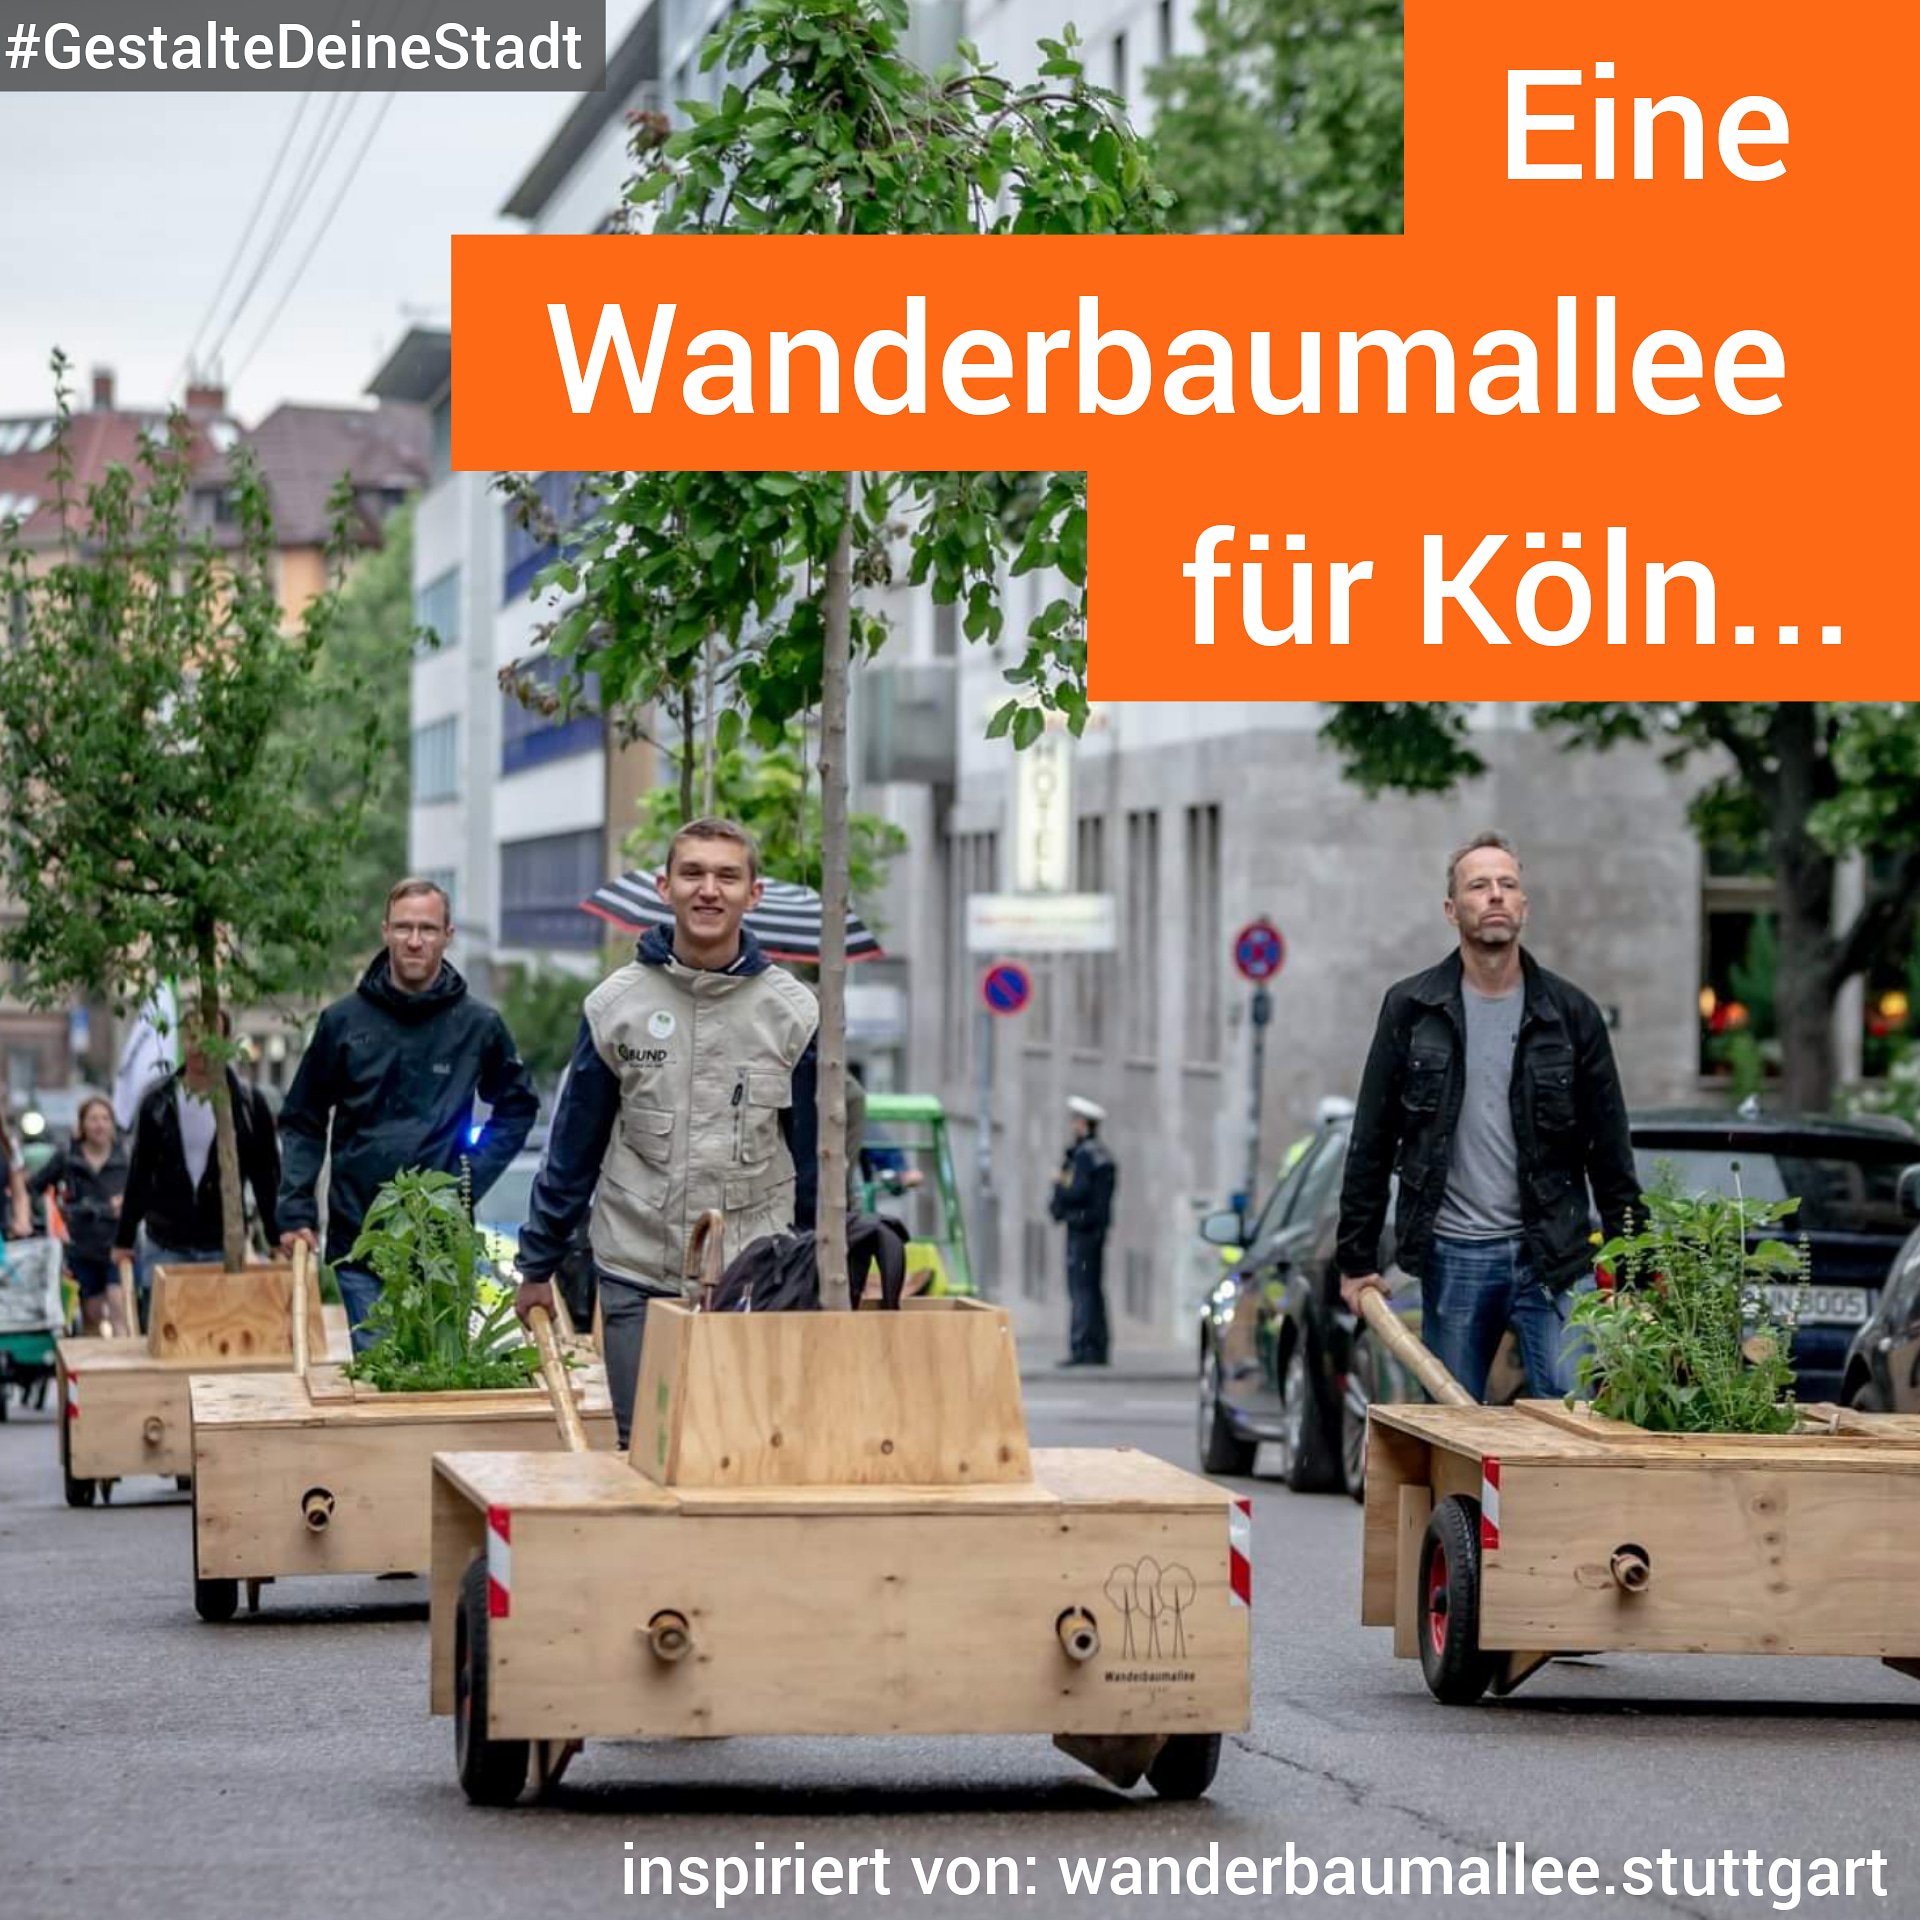 Eine Wanderbaumallee für Köln #GestalteDeineStadt